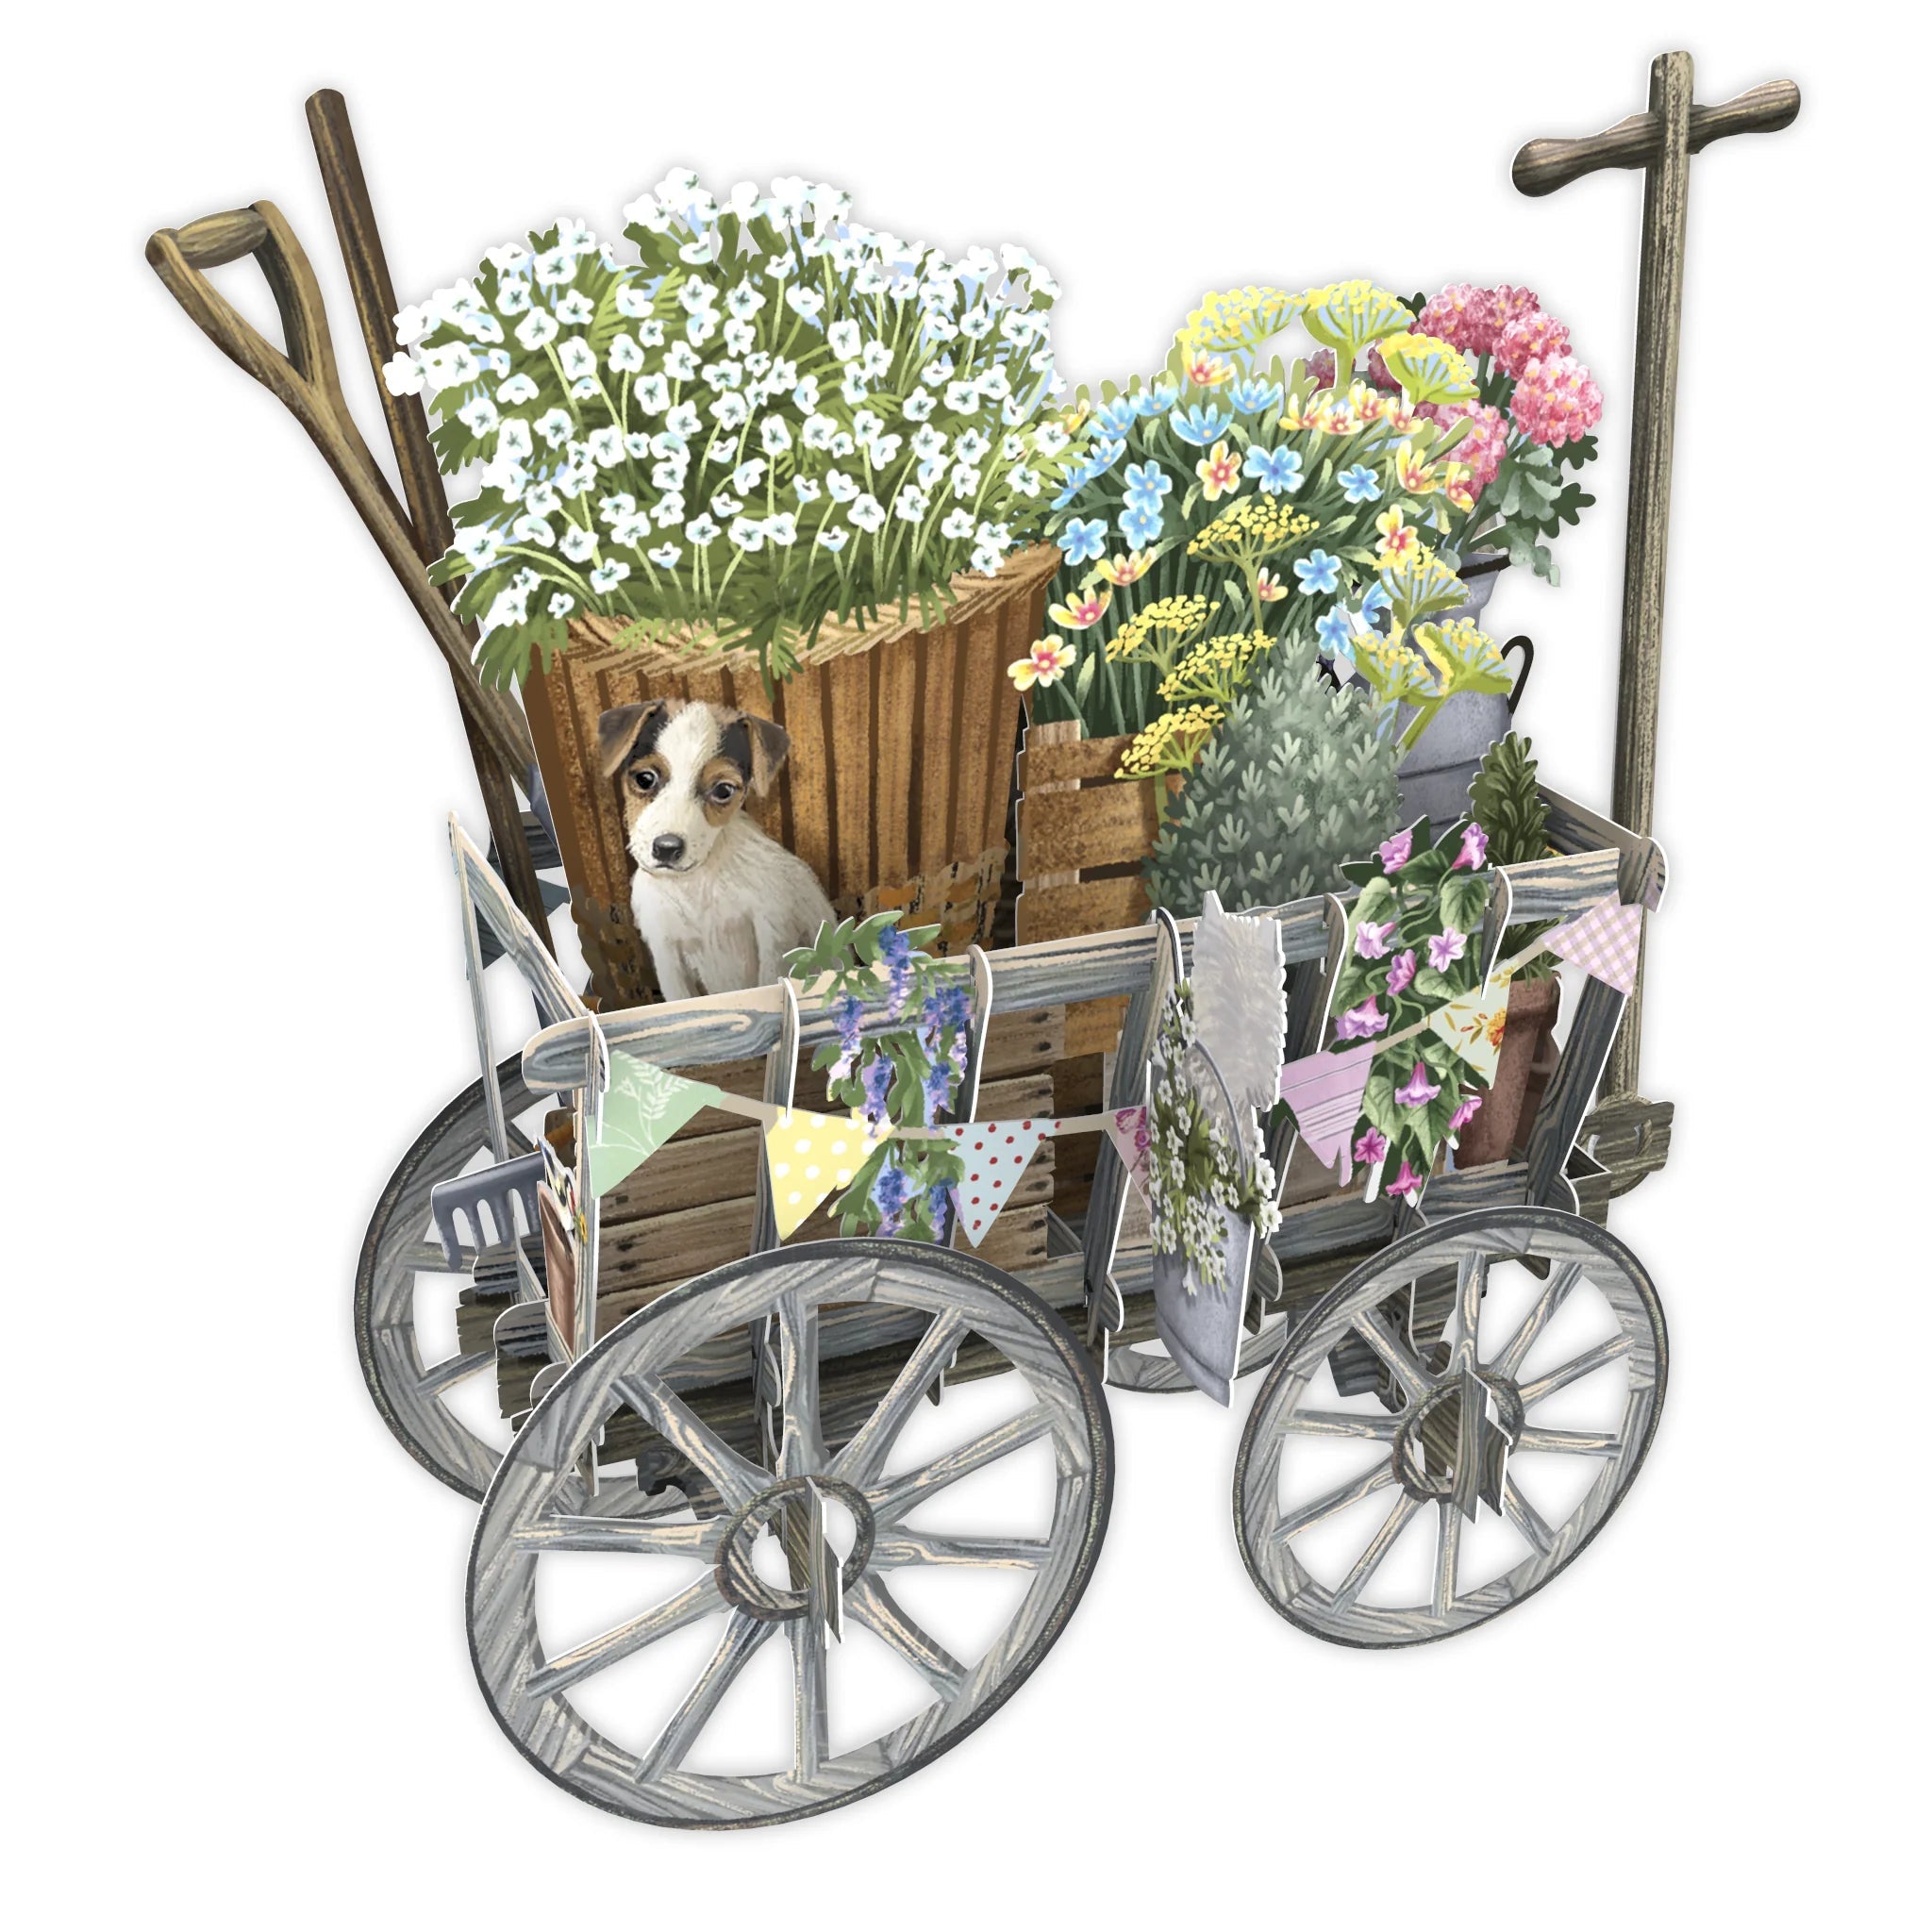 3D Pop Up Cart - Goat Cart